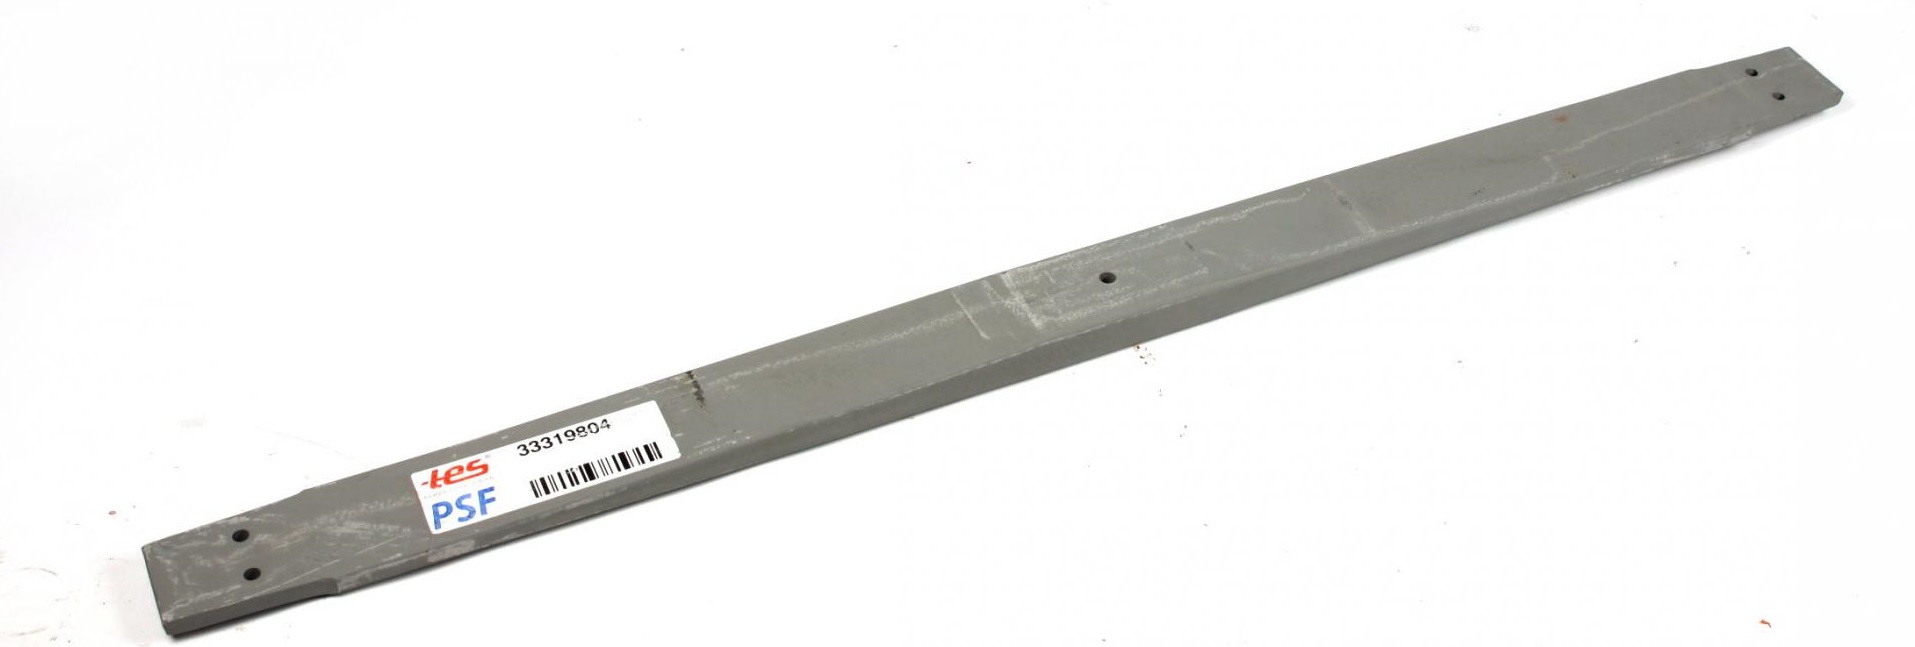 Рессоры Рессора передняя коренная MB 809-814 (80/860/920) 21mm. TES арт. 3340600119ZT